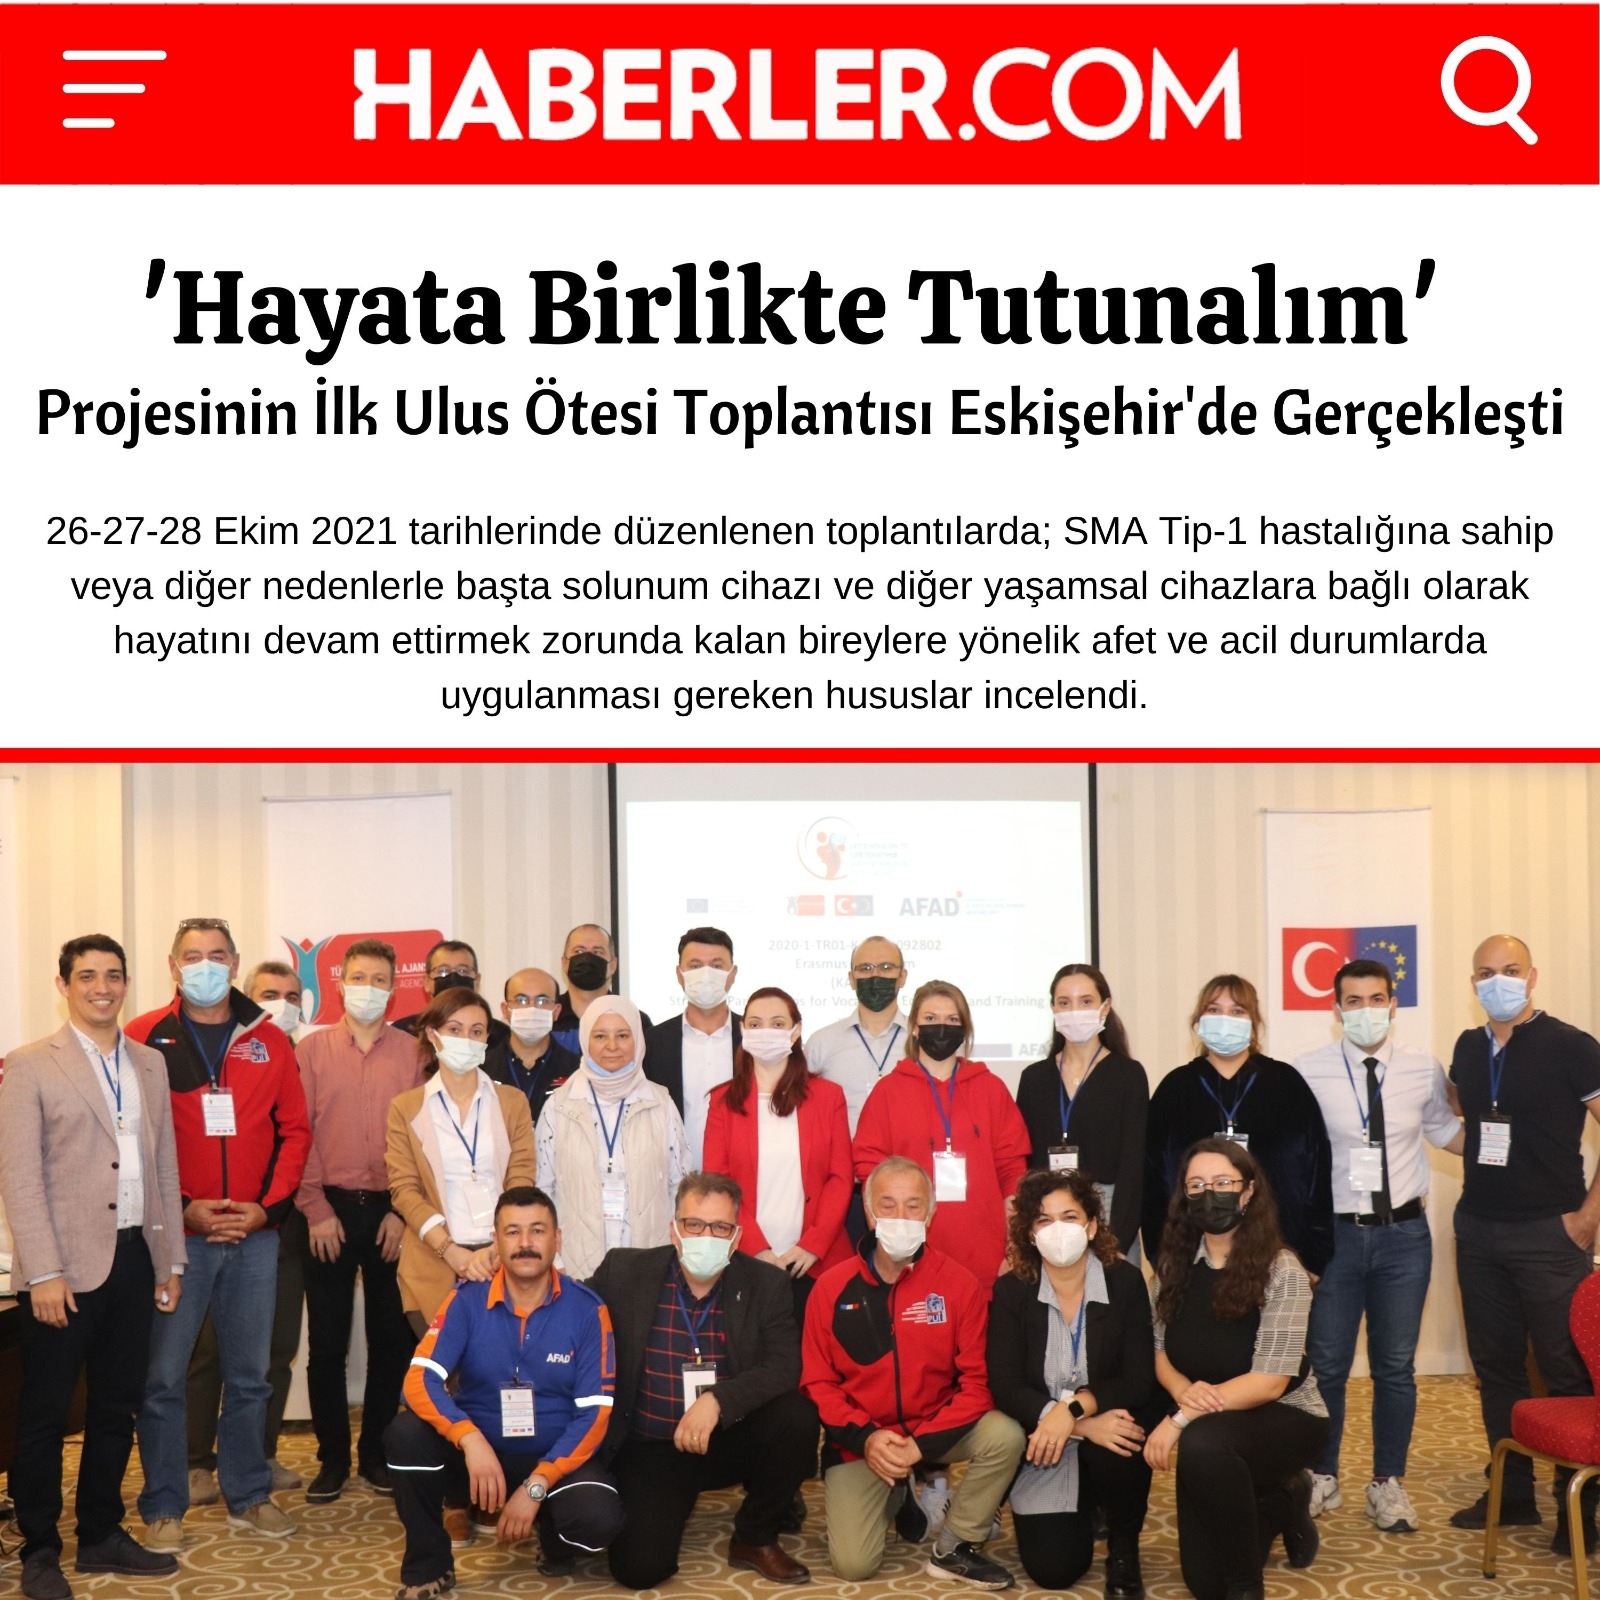 'Hayata Birlikte Tutunalım' projesinin ilk ulus ötesi toplantısı Eskişehir'de gerçekleştirildi.